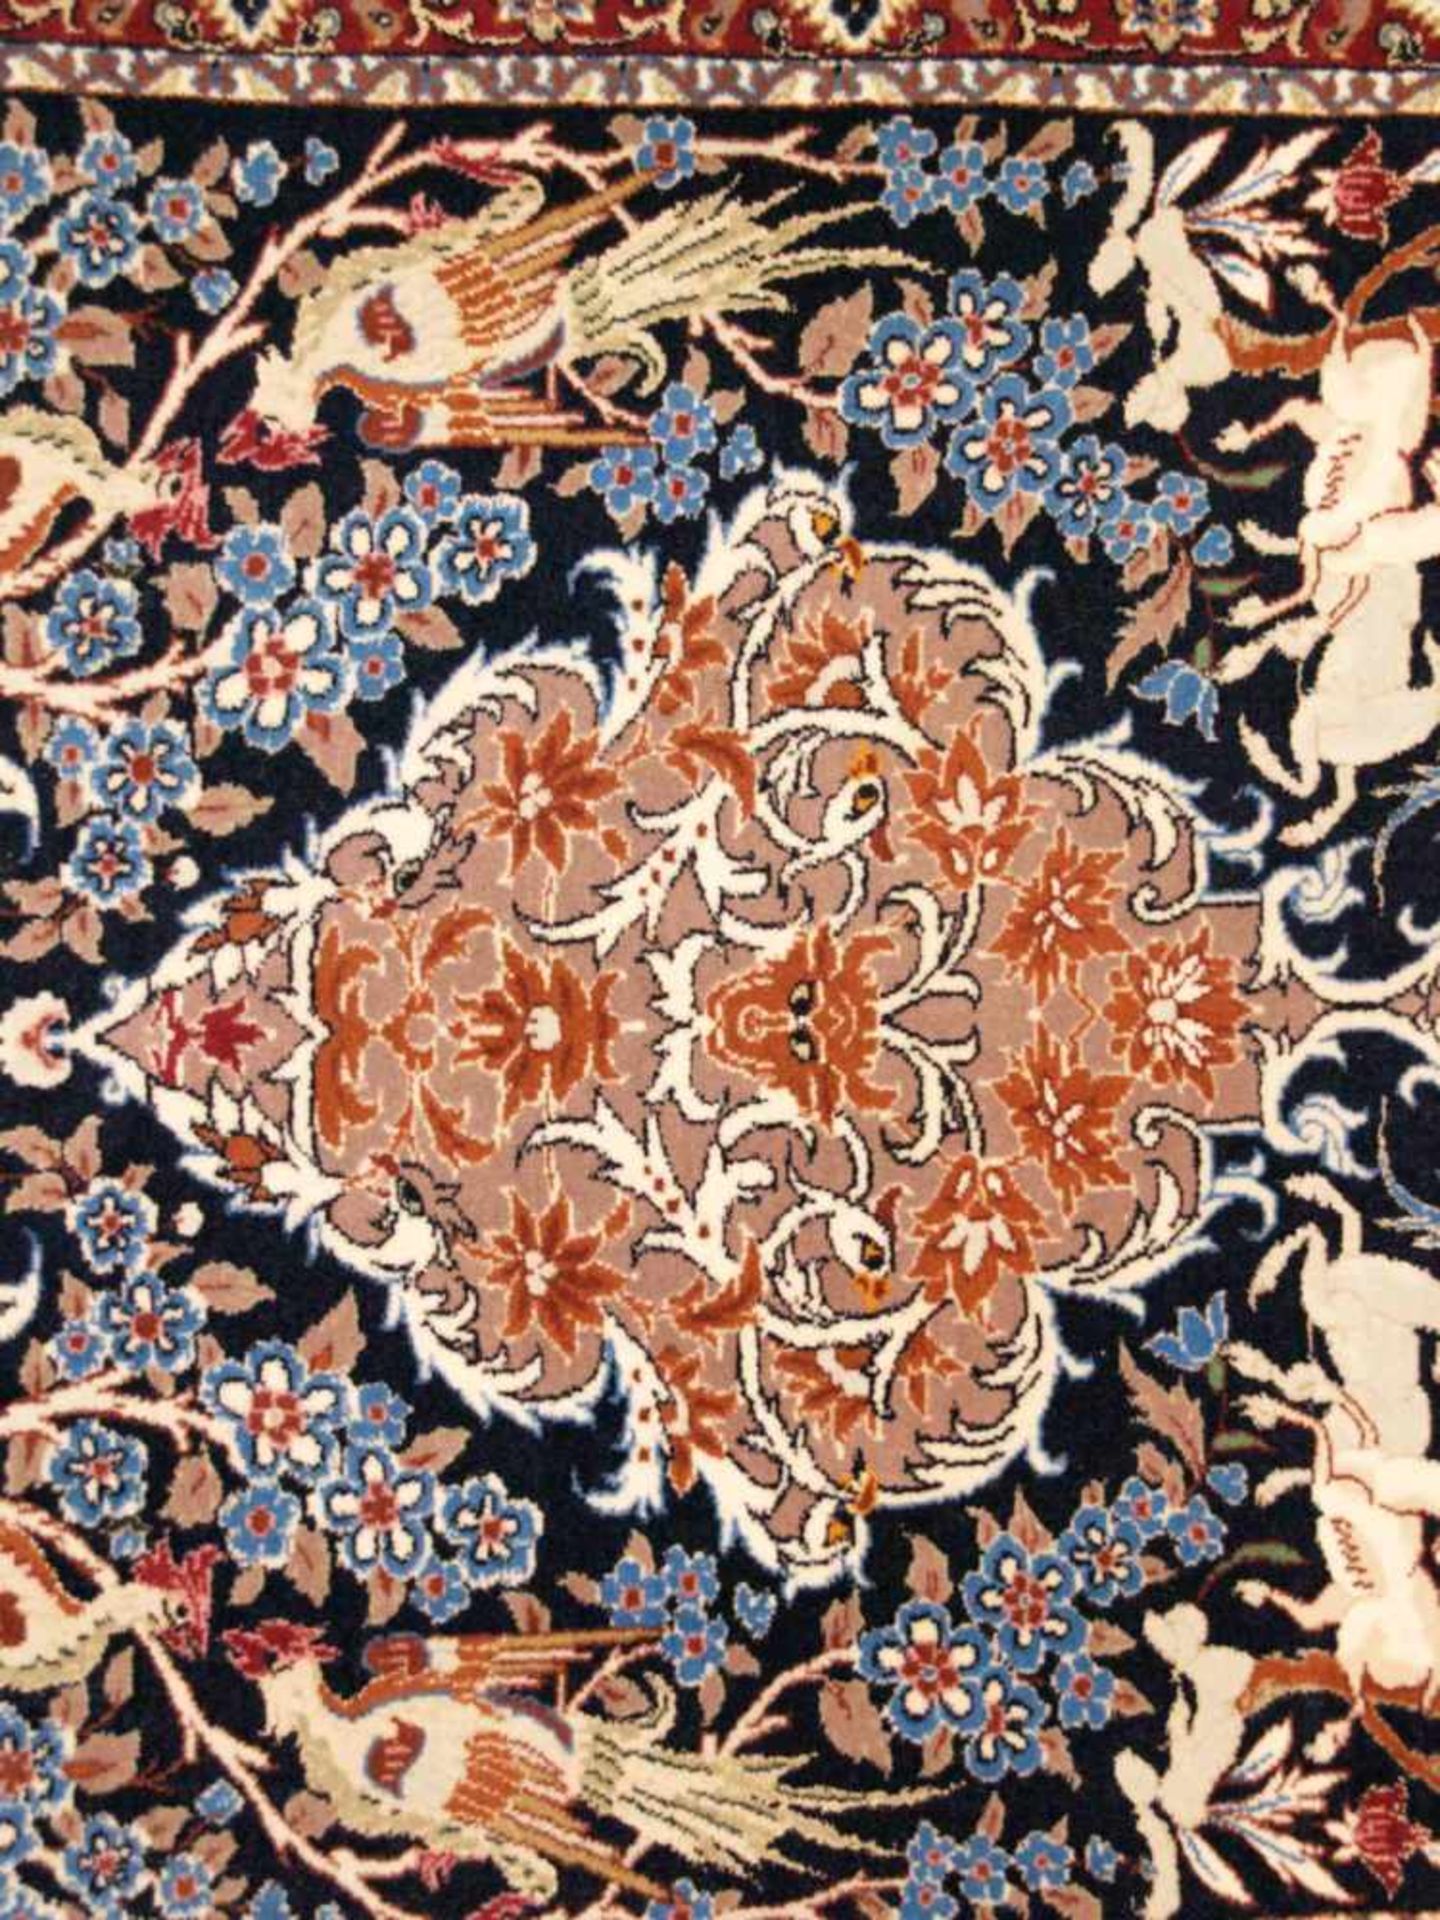 Orientteppich - Wolle und Seide, blaugrundig, zentrale florale Kartusche, gerahmt von Vögeln, - Bild 7 aus 11